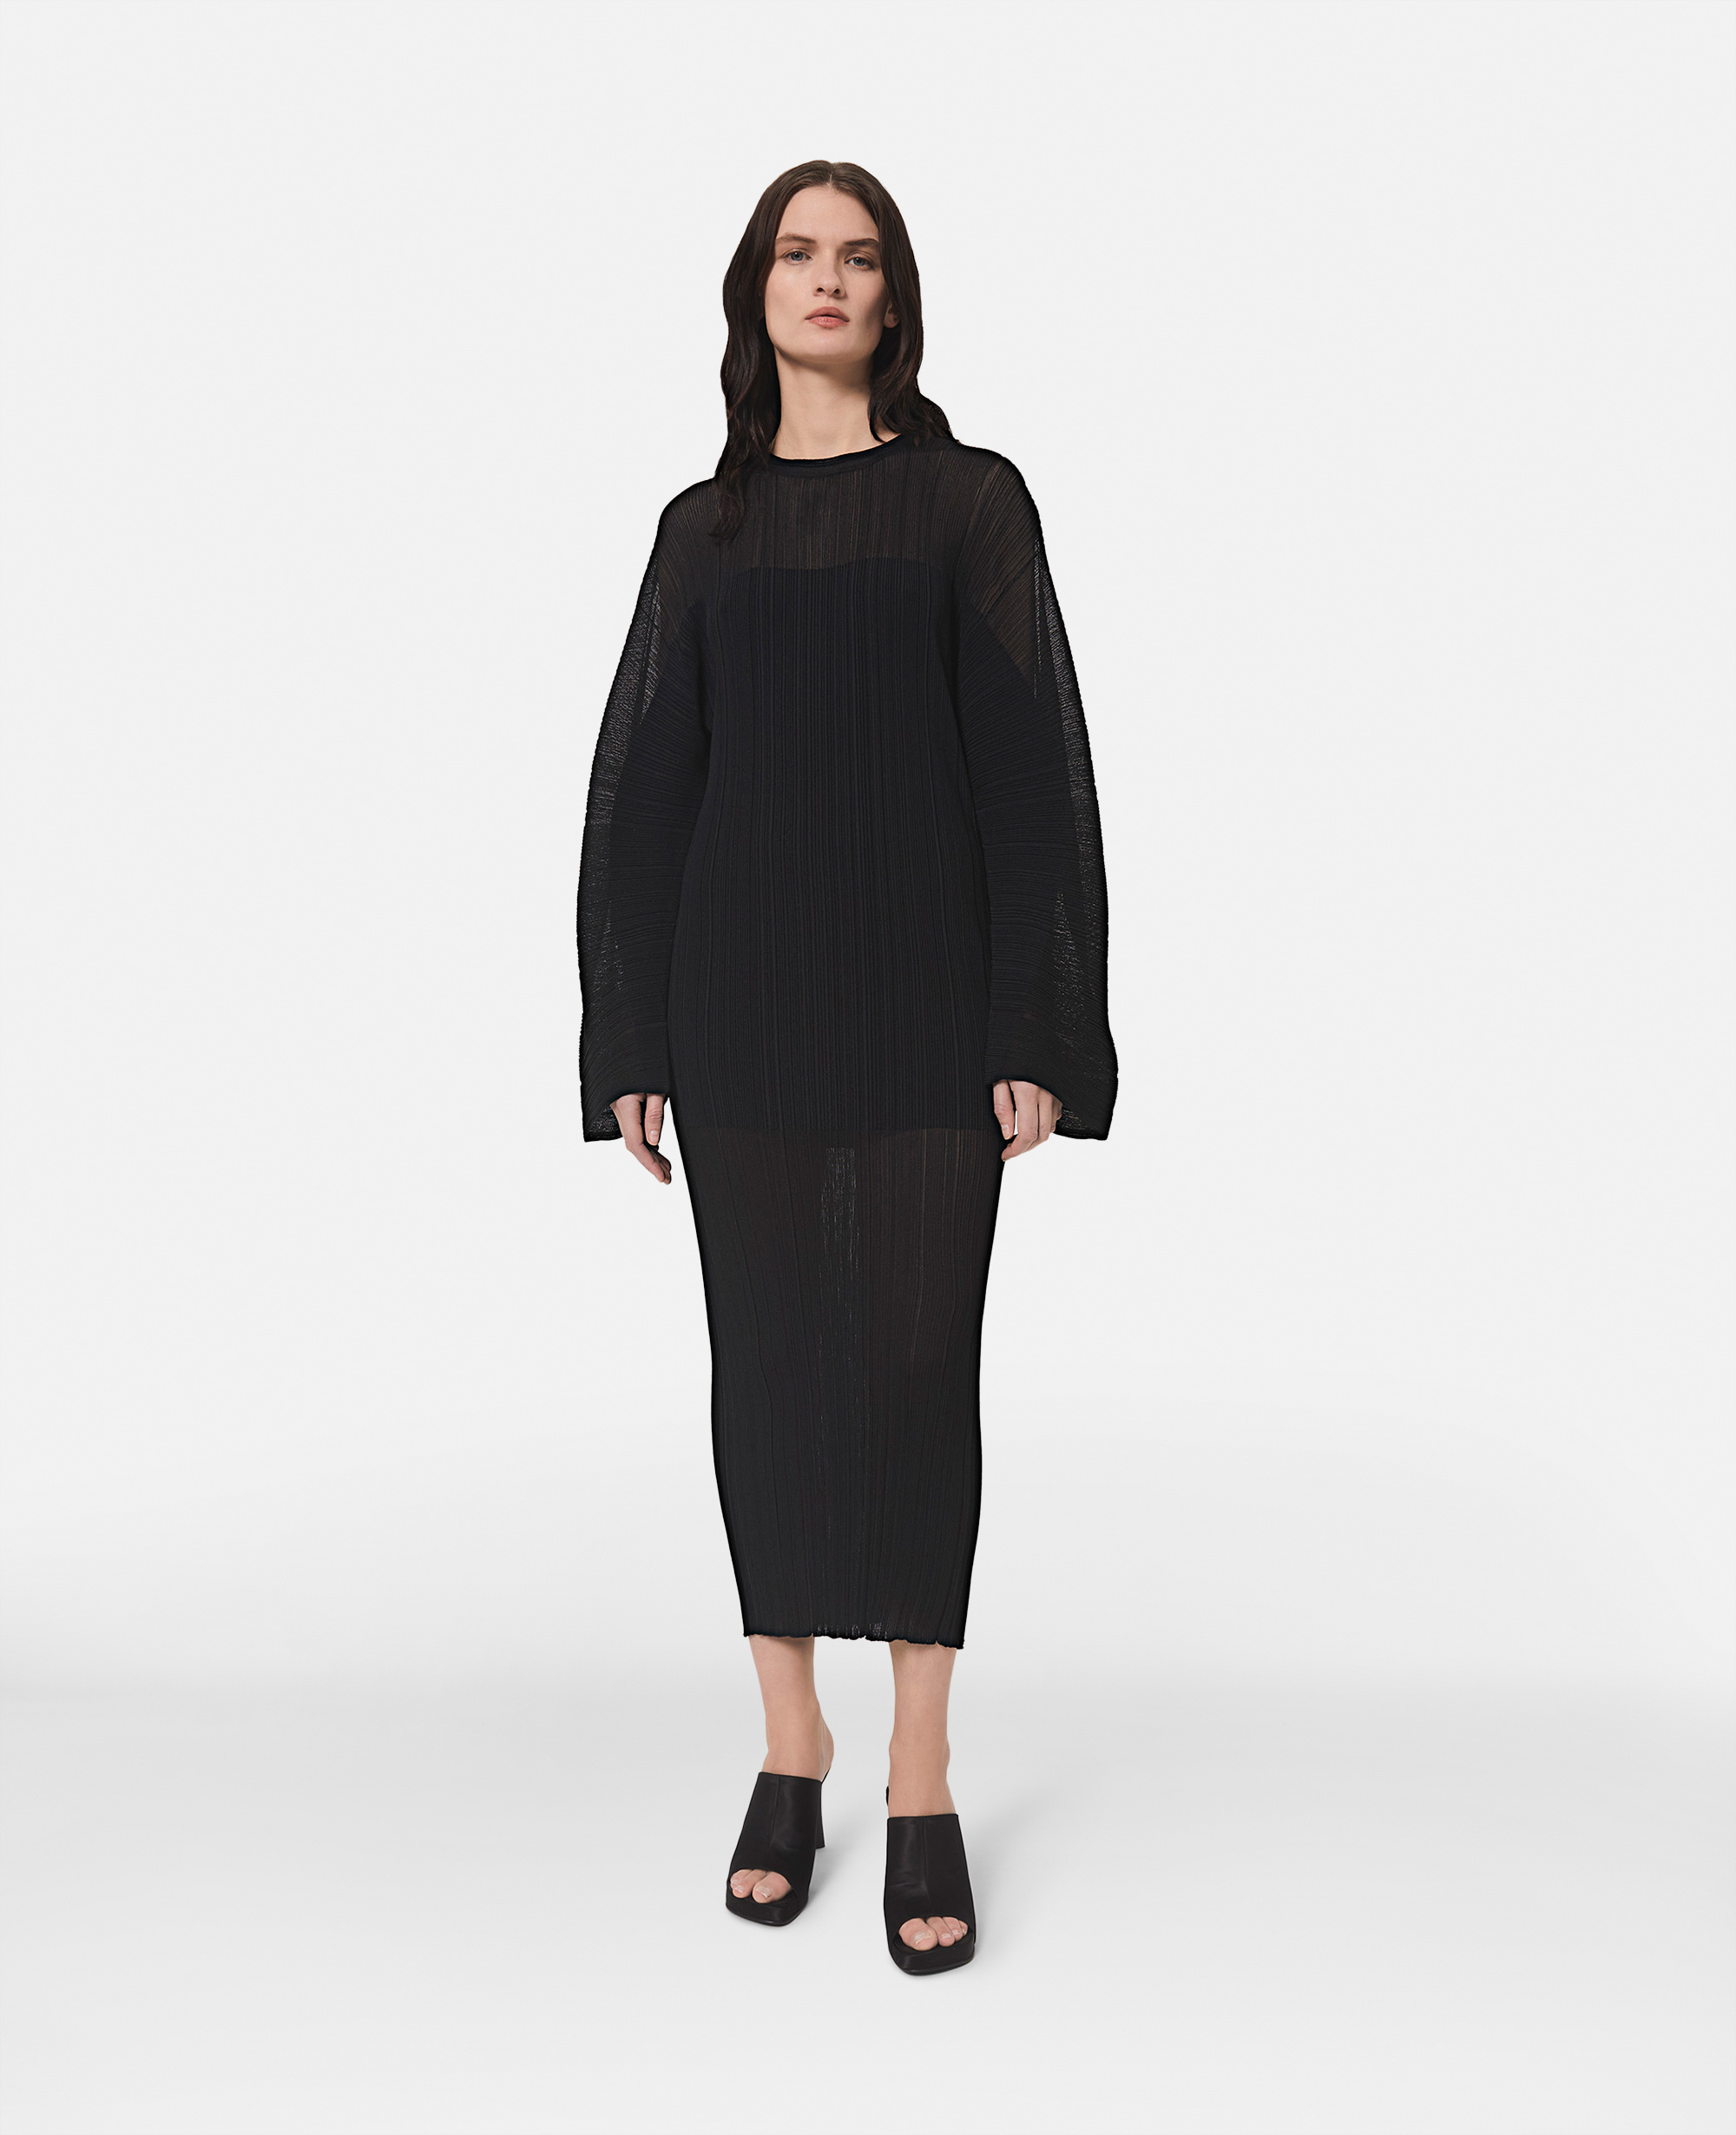 Stella Mccartney Banana Sleeve Plisse Pleat Knit Dress In Black